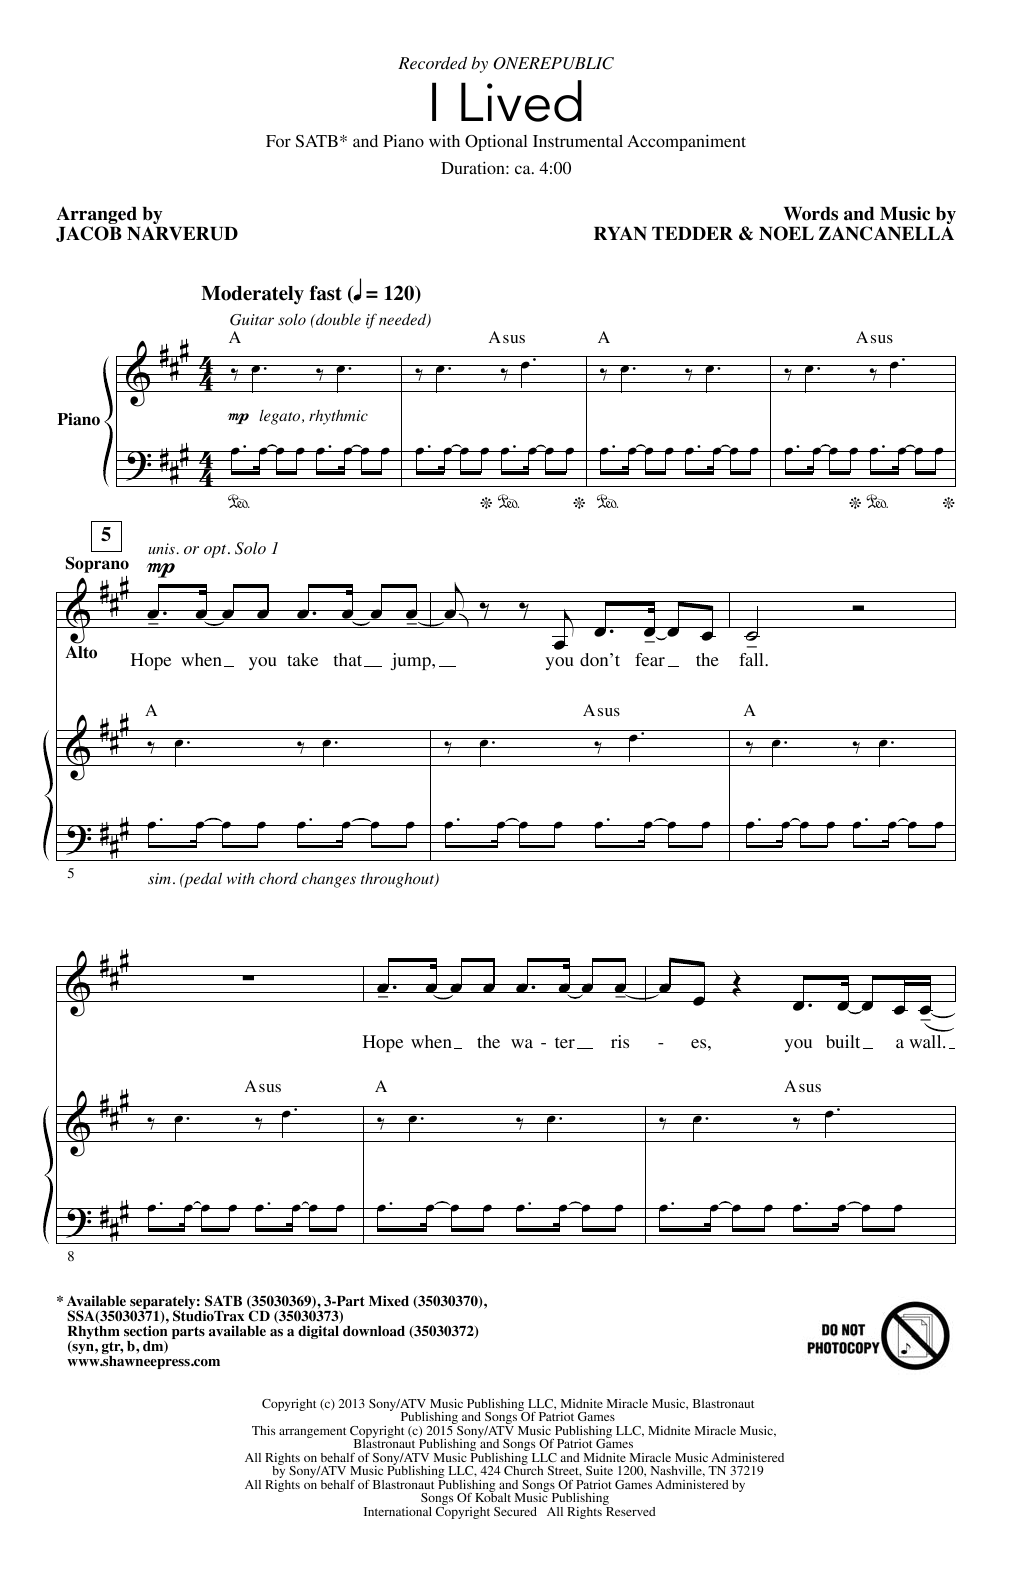 OneRepublic I Lived (arr. Jacob Narverud) Sheet Music Notes & Chords for SATB - Download or Print PDF